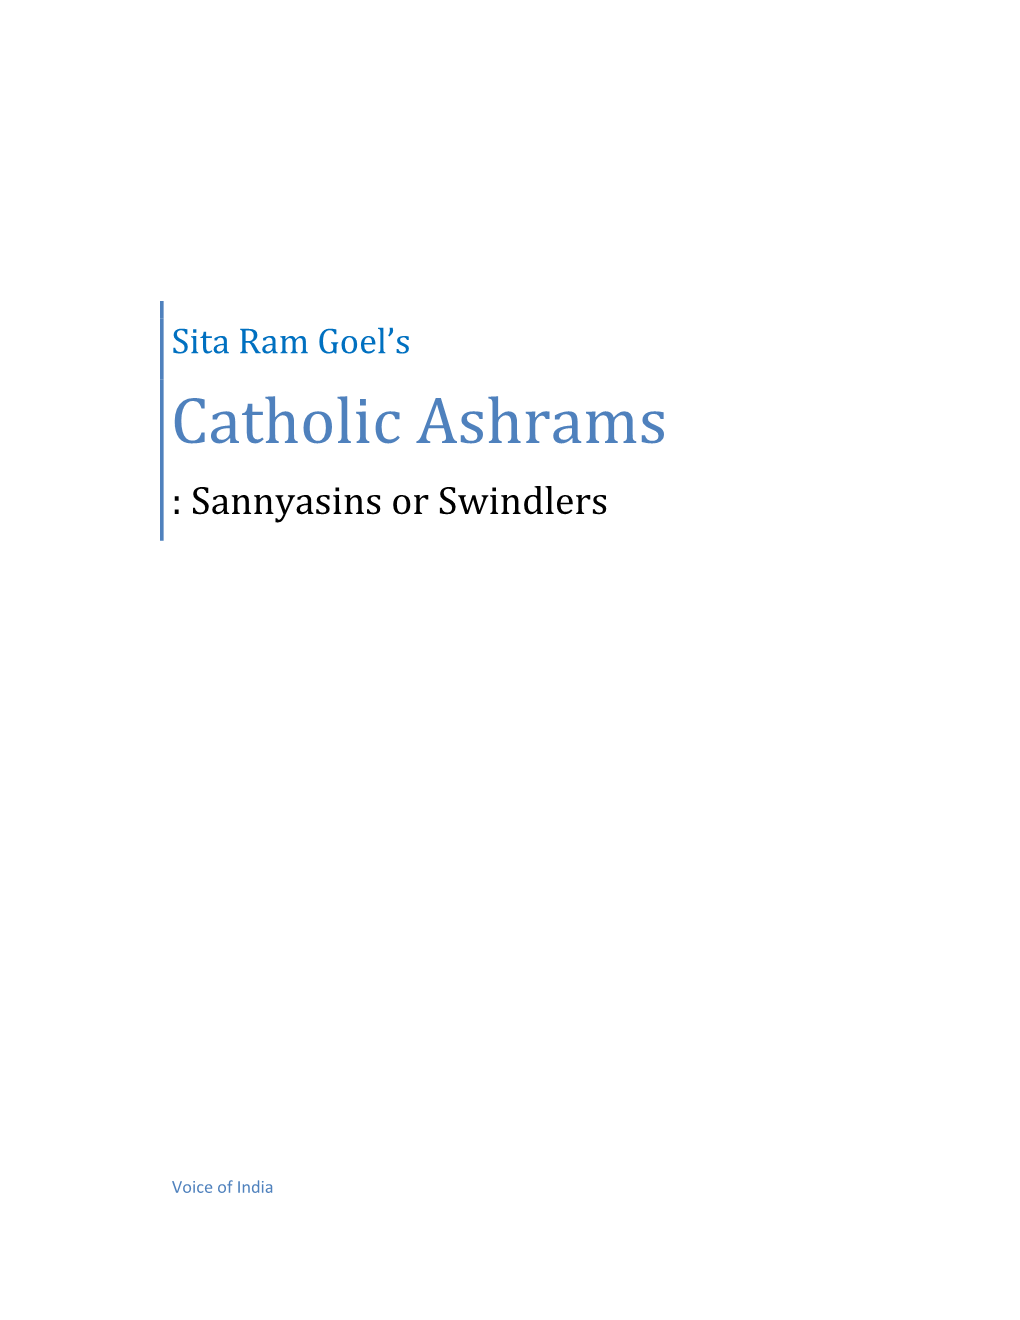 Catholic Ashrams